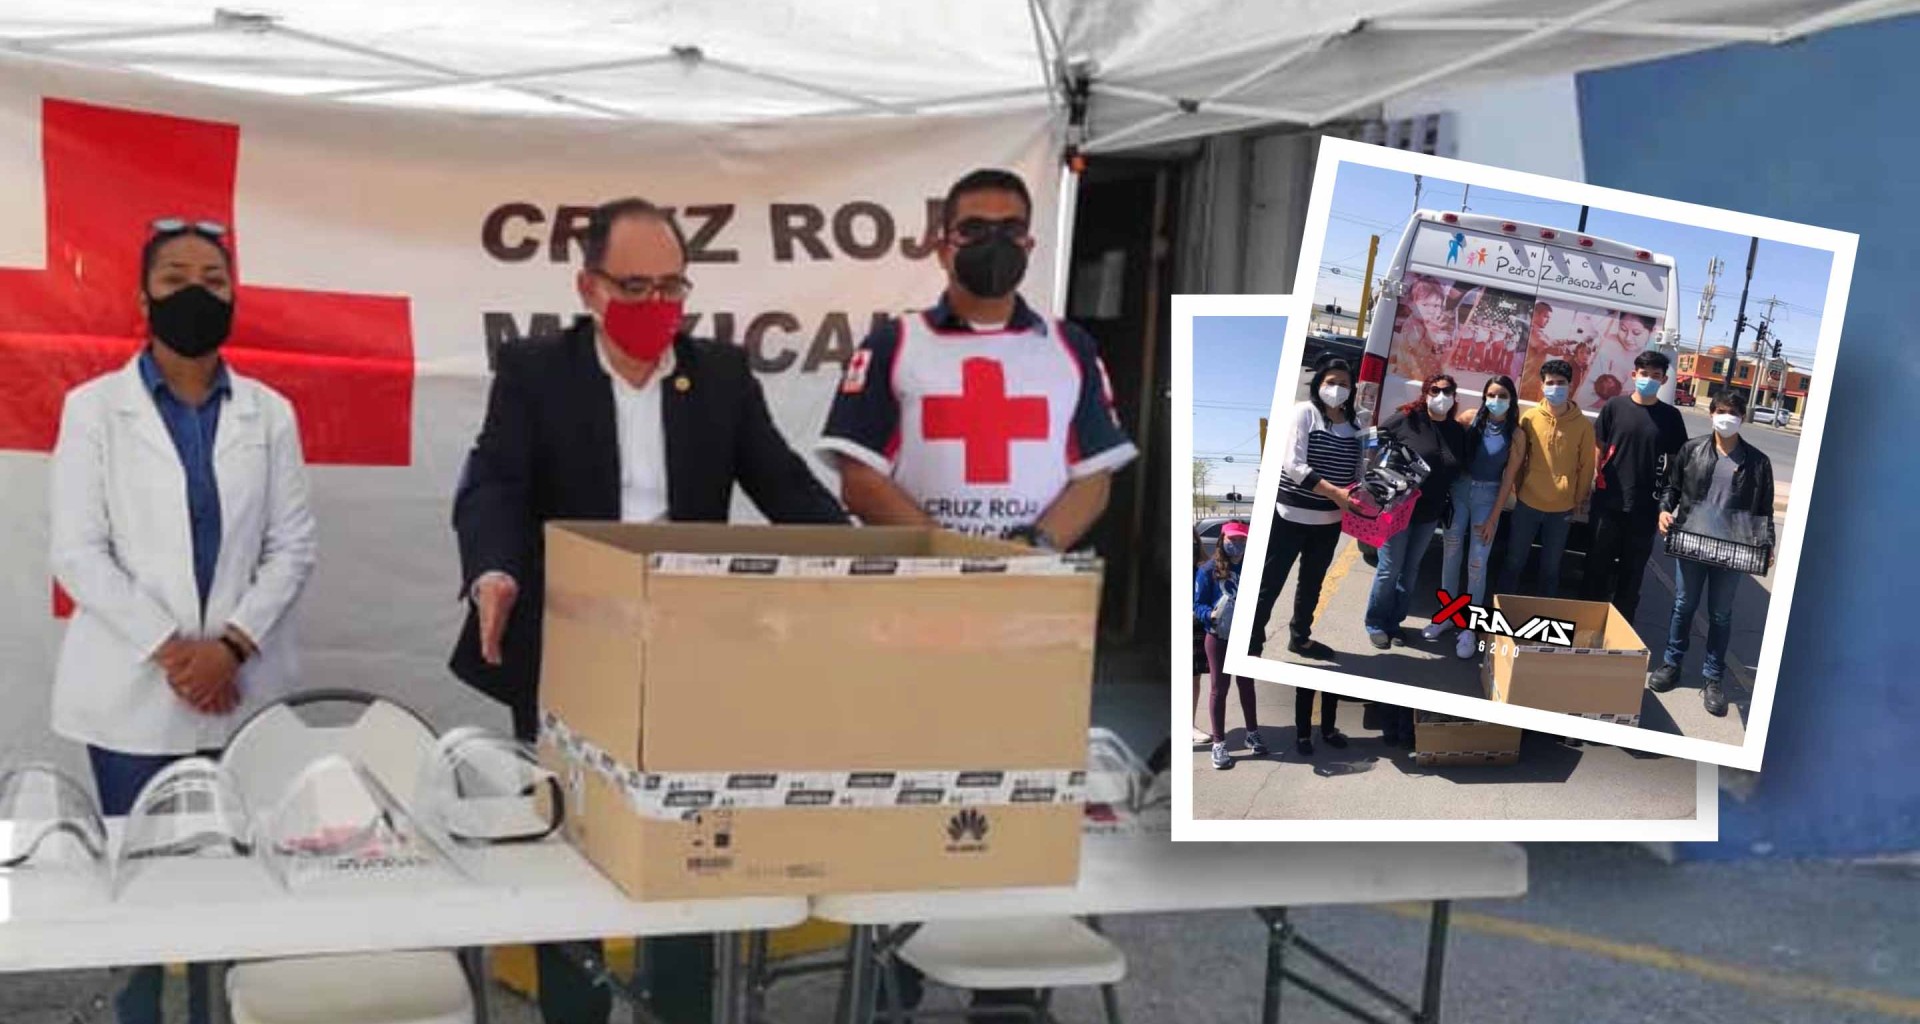 Cruz Roja recibiendo el donativo de XRAMS